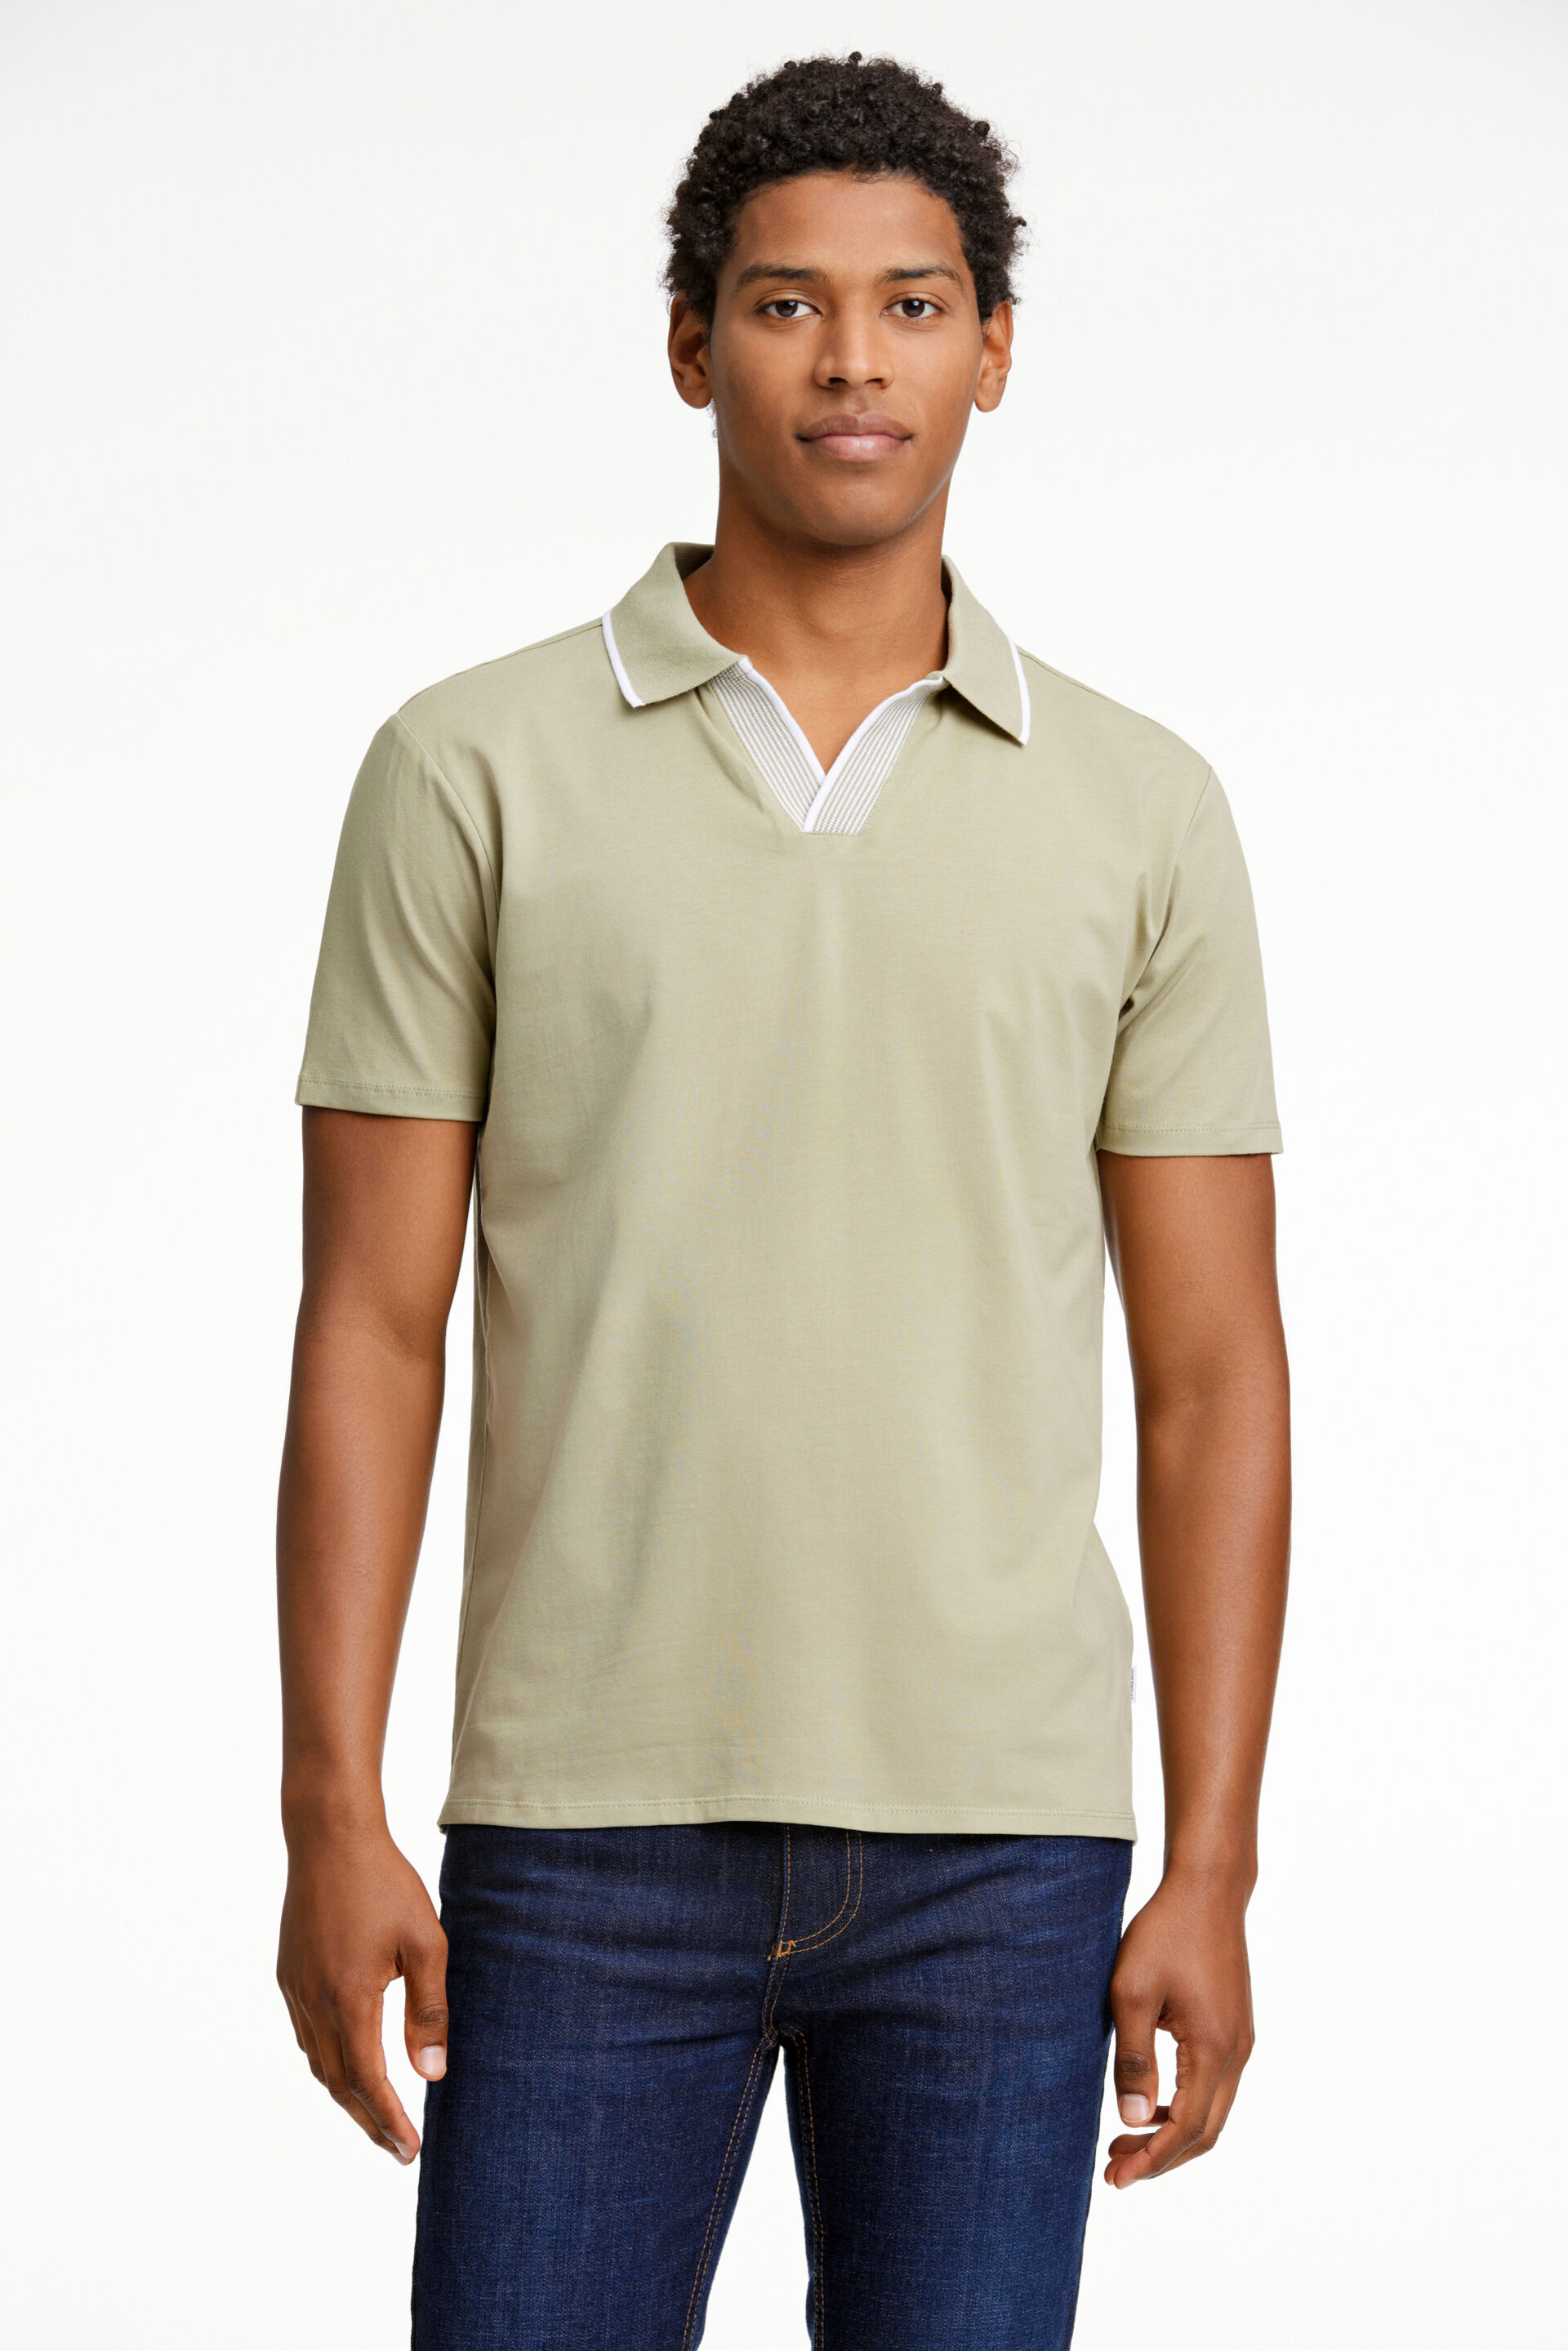 Polo shirt Polo shirt Green 30-404056